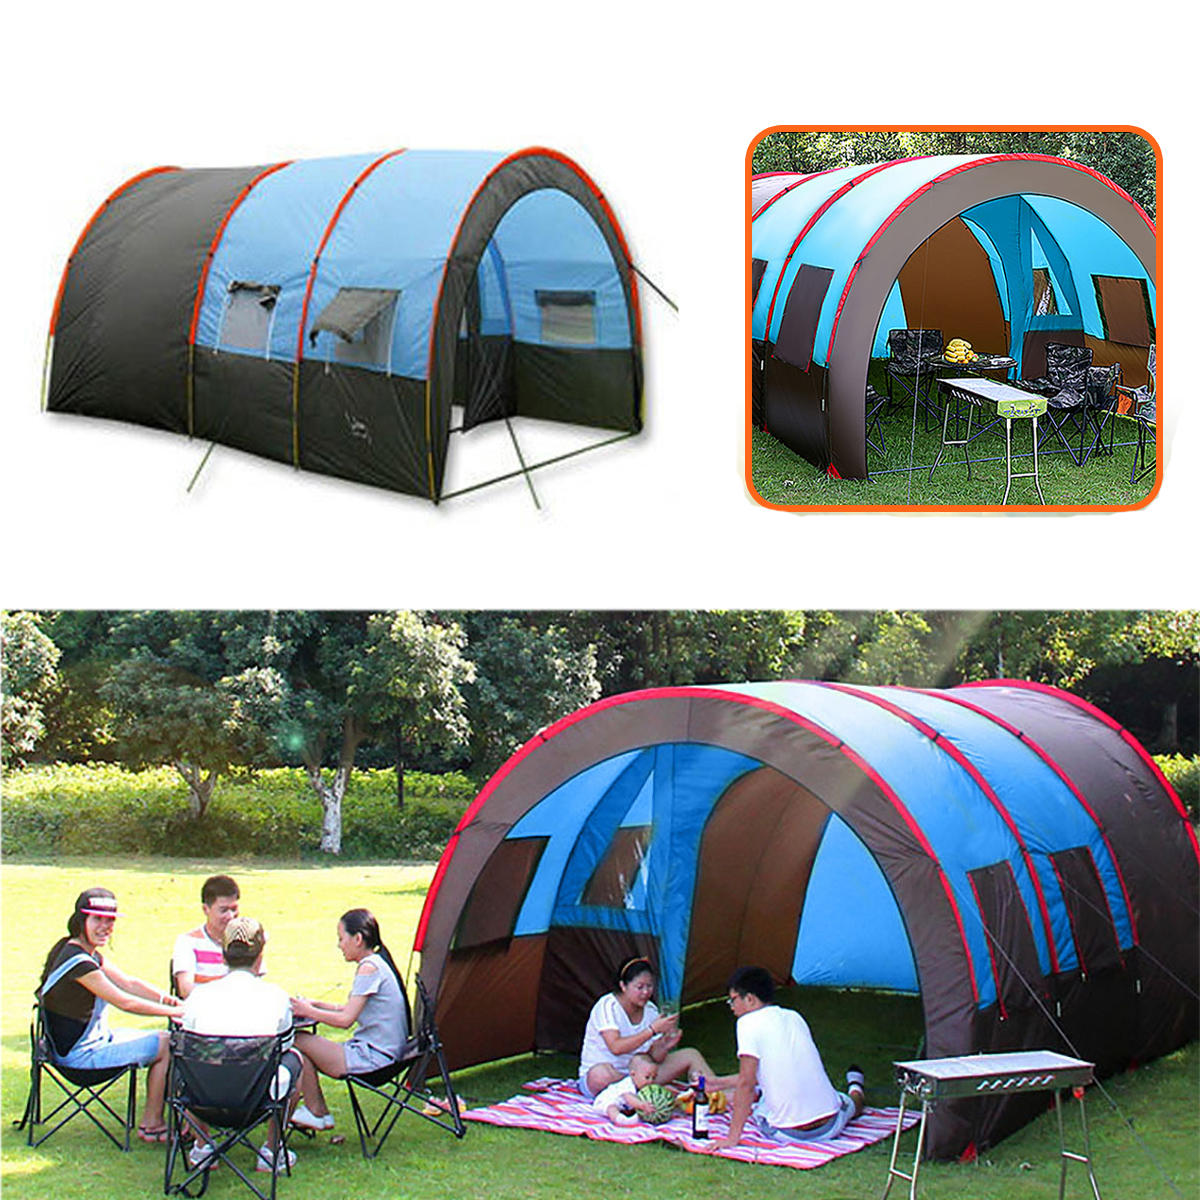 Tenda da campeggio all'aperto per 8-10 persone, impermeabile a doppio strato, grande tenda familiare con copertura parasole.